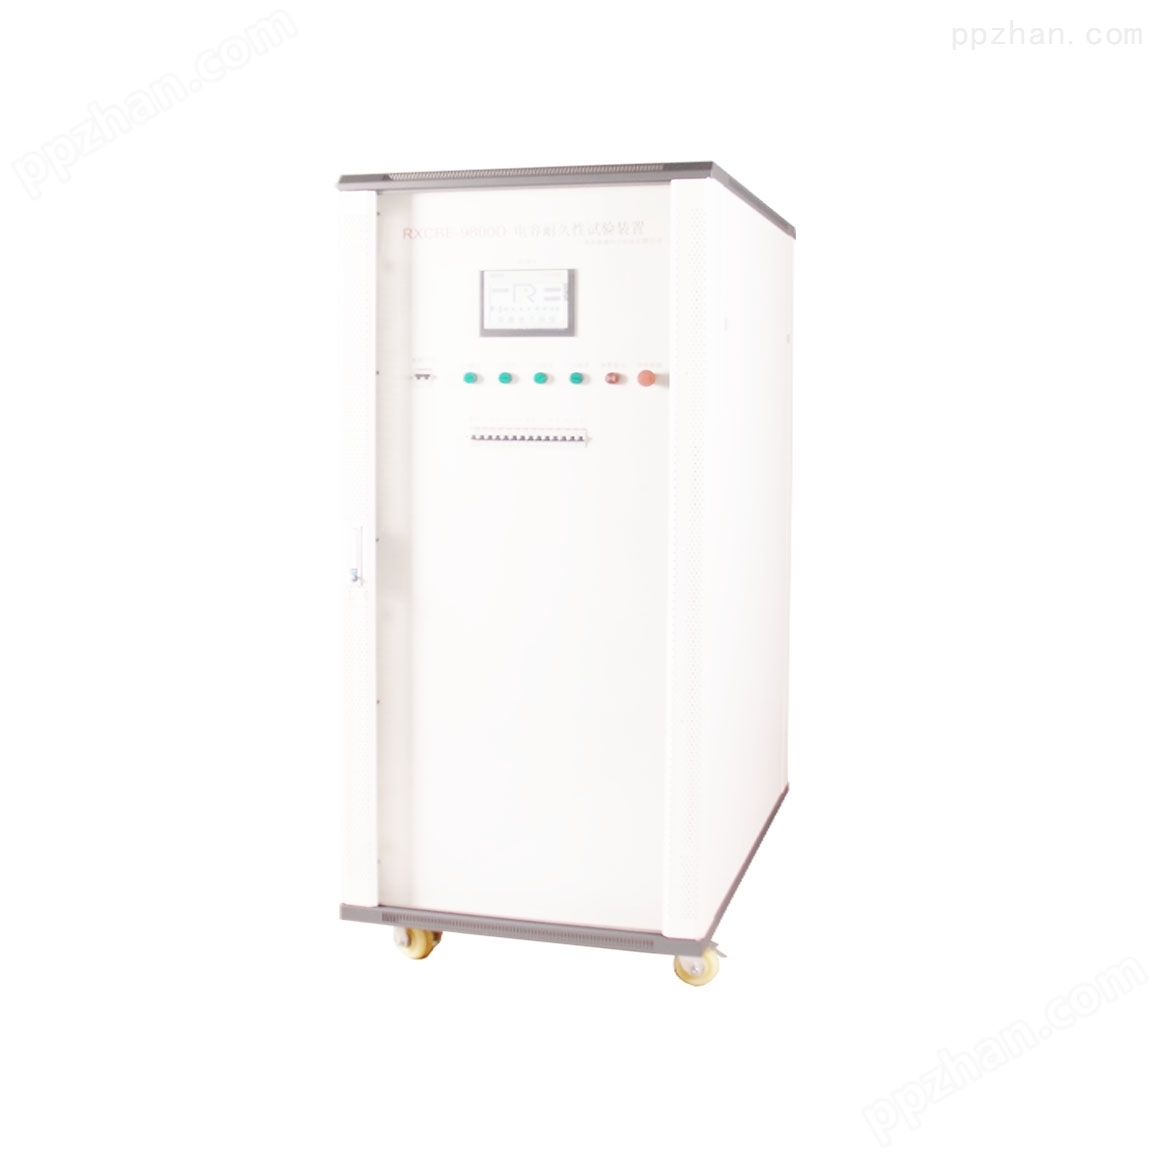 冰箱电容器破坏性试验装置使用原理是什么